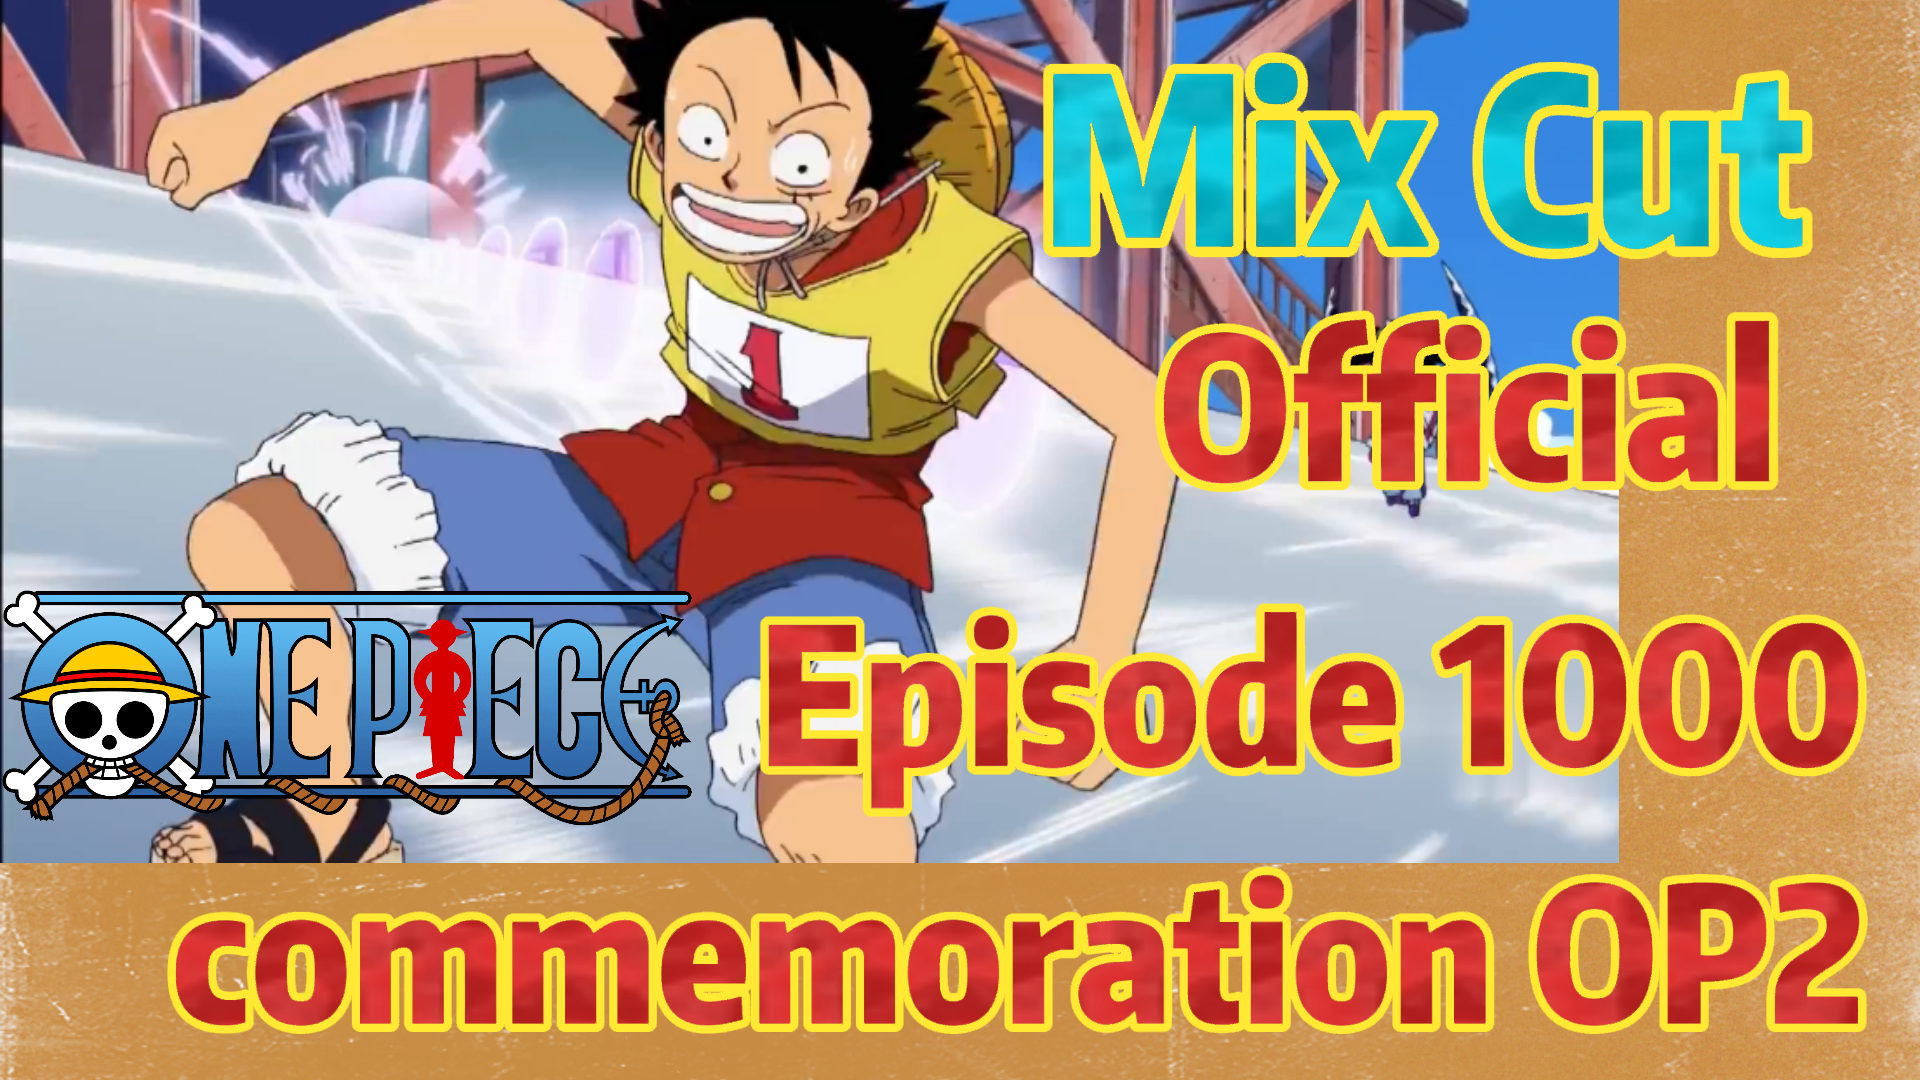 One Piece Mix Cut Official Episode 1000 Commemoration Op2 Bilibili